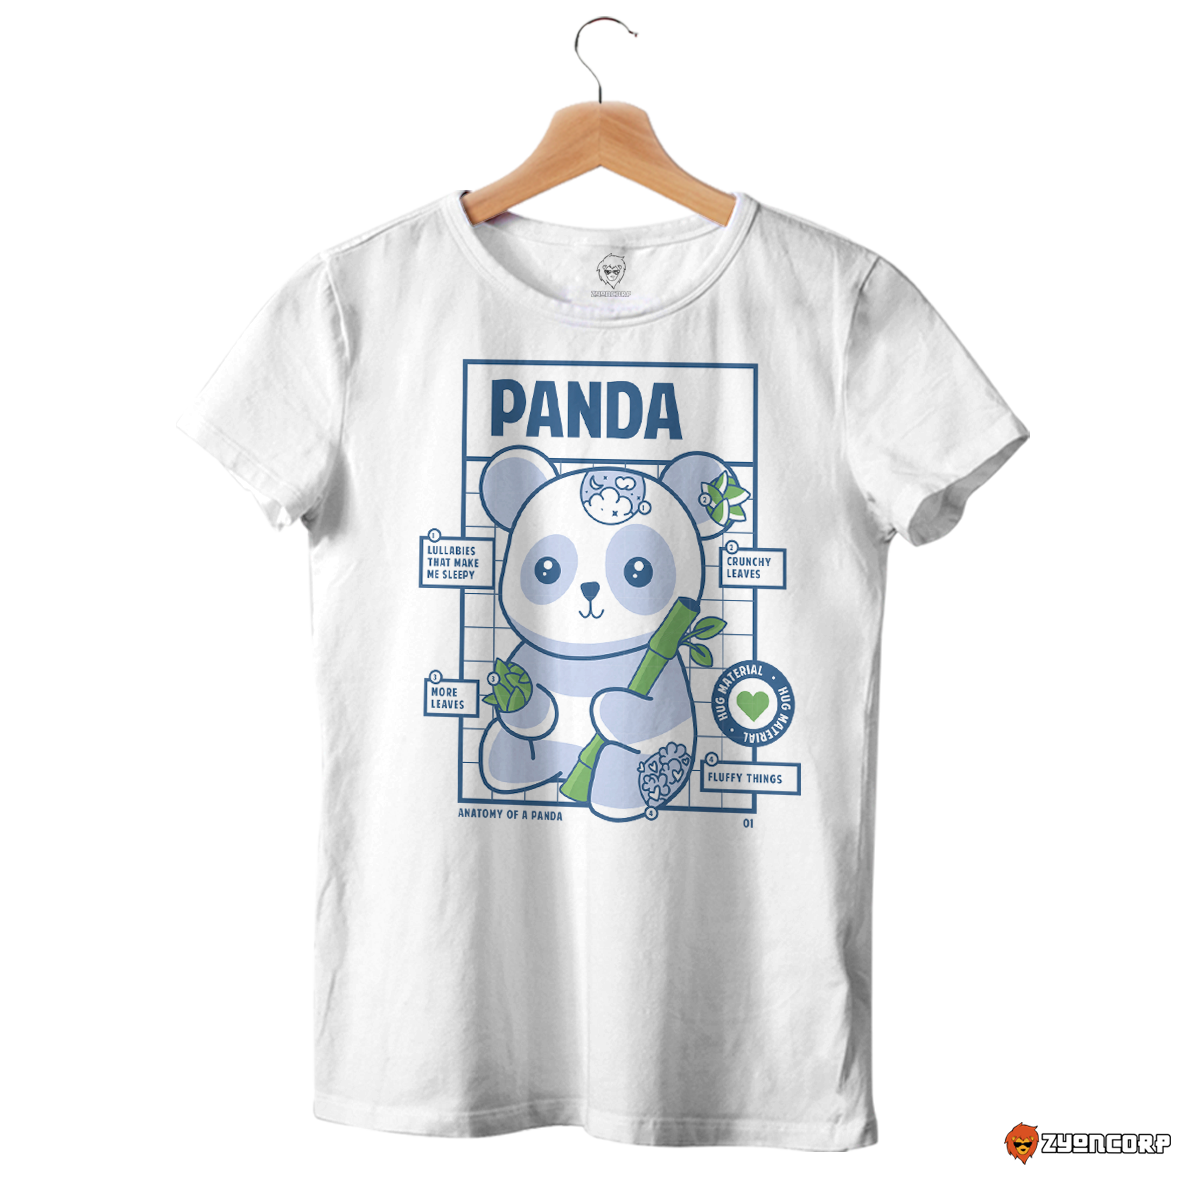 Anatomy of Panda